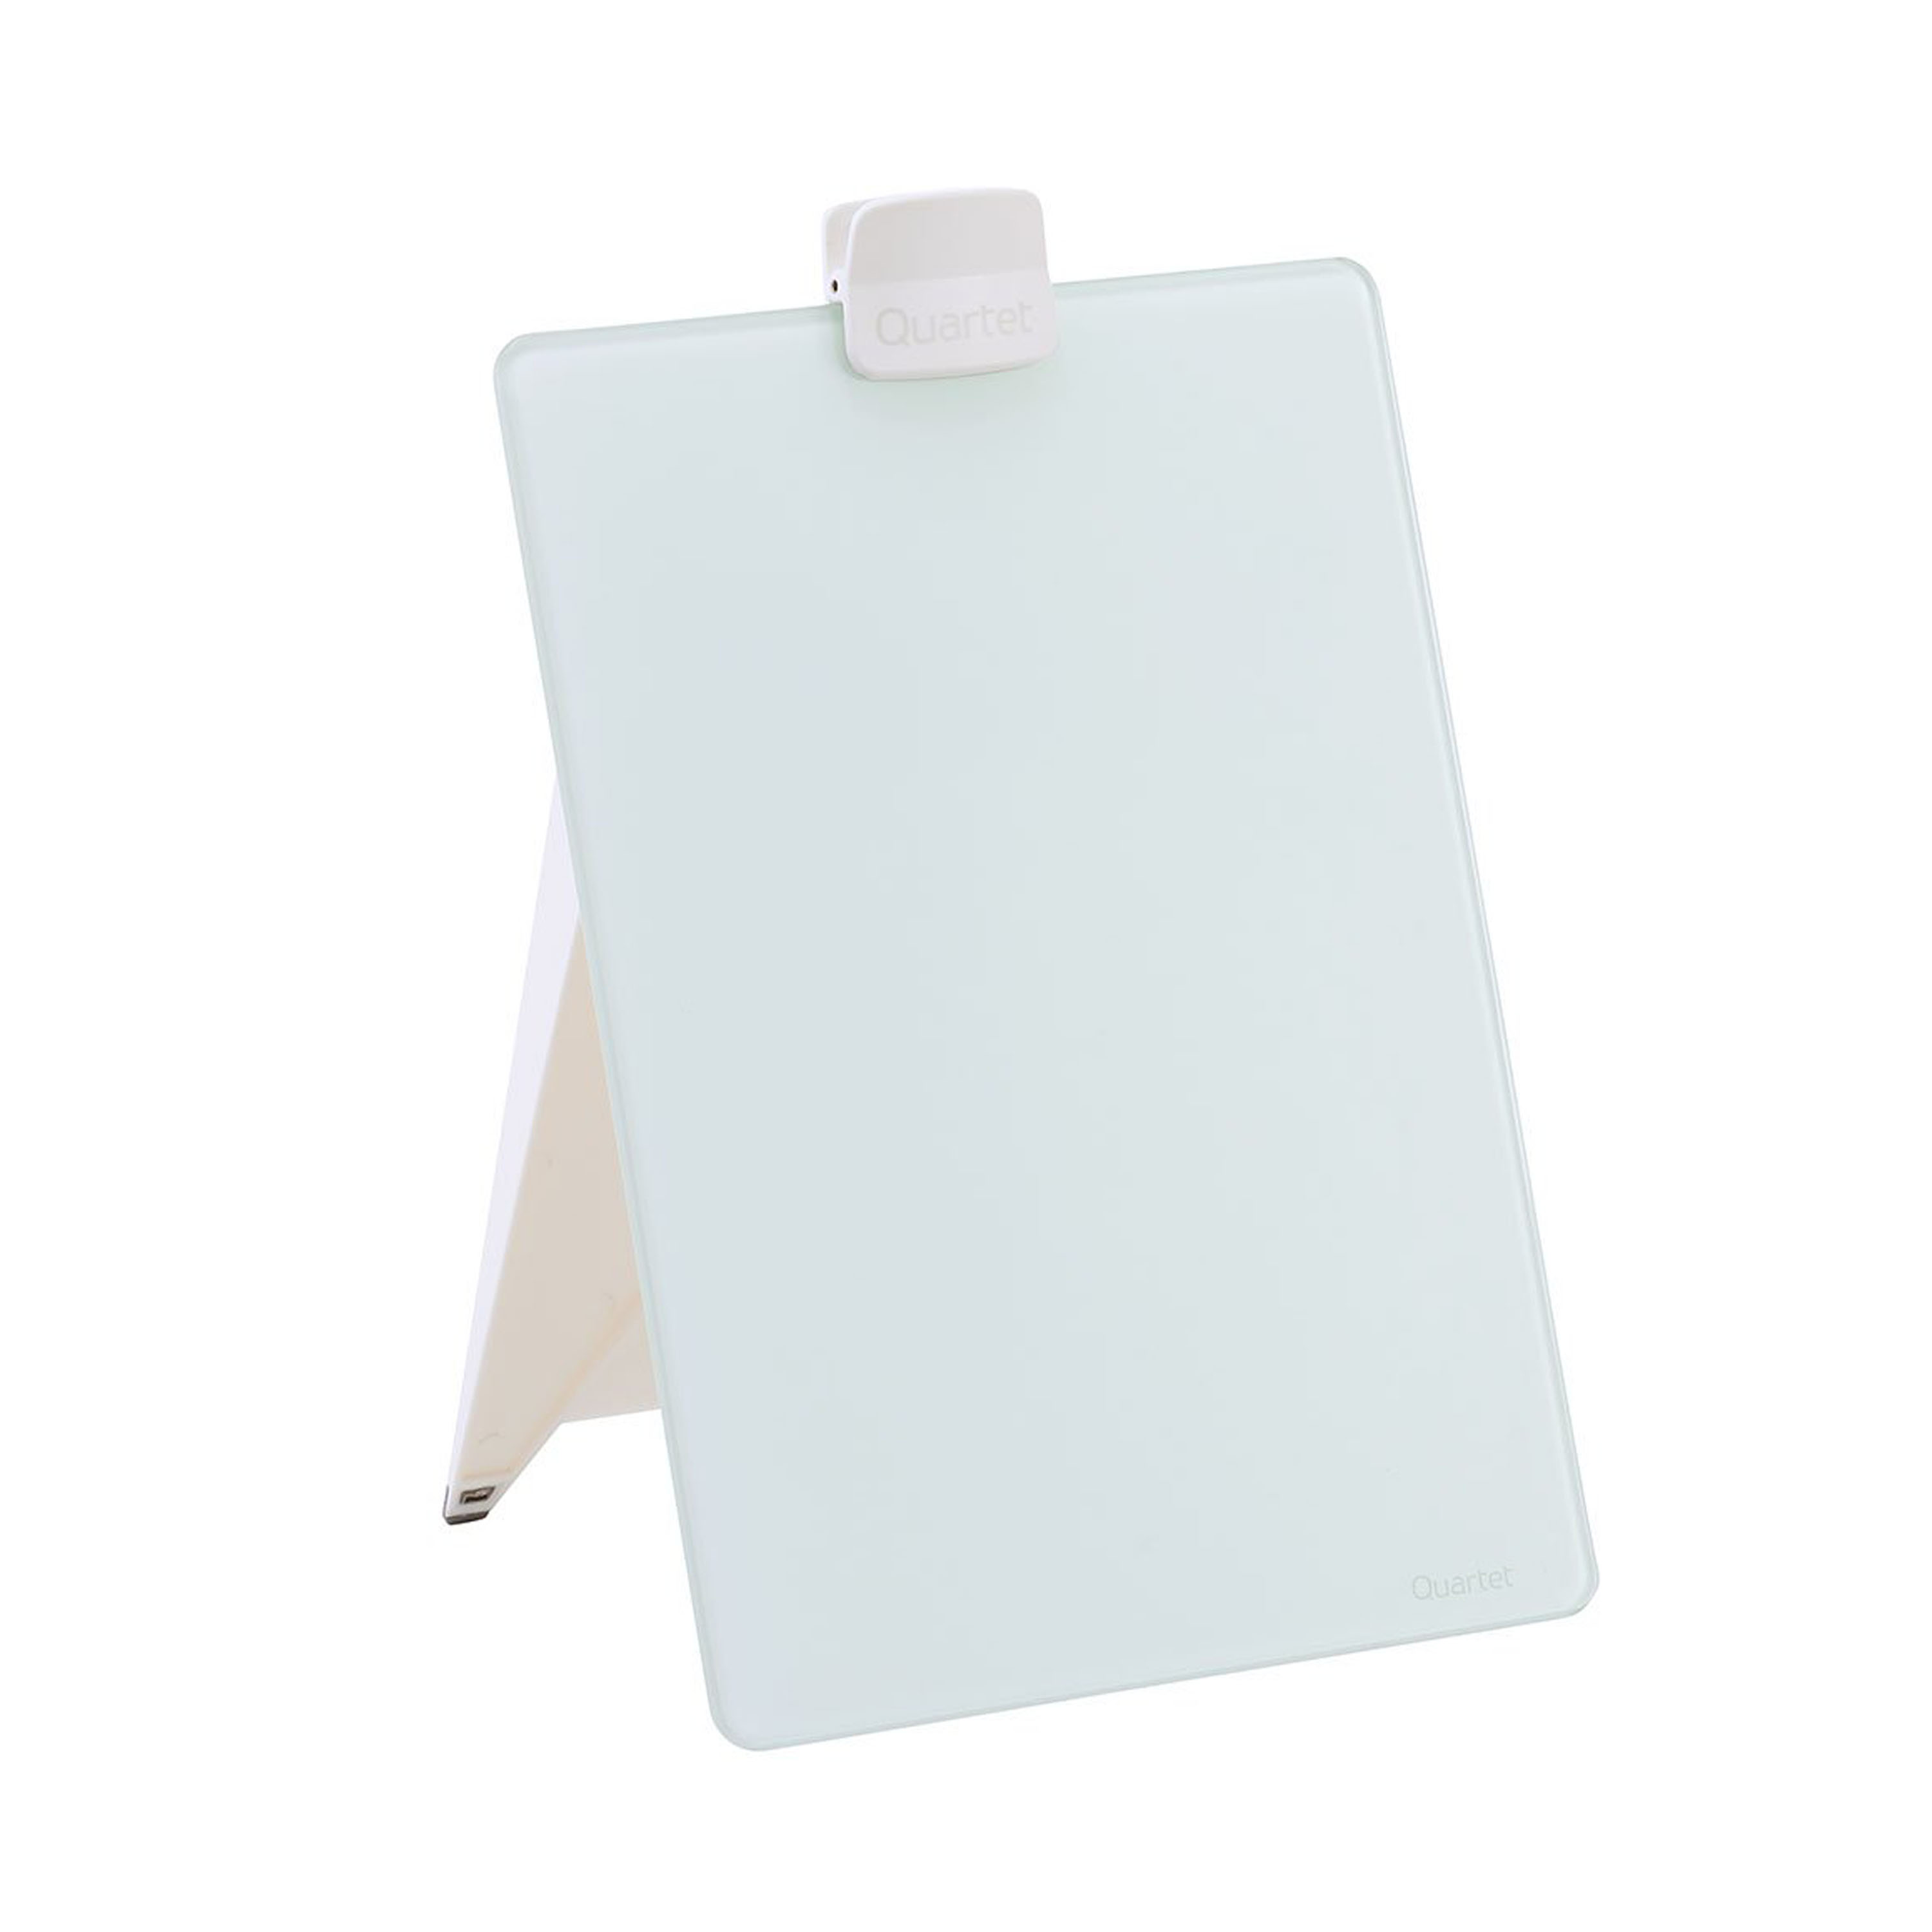 Quartet Glass Dry-Erase Desktop Easel, White